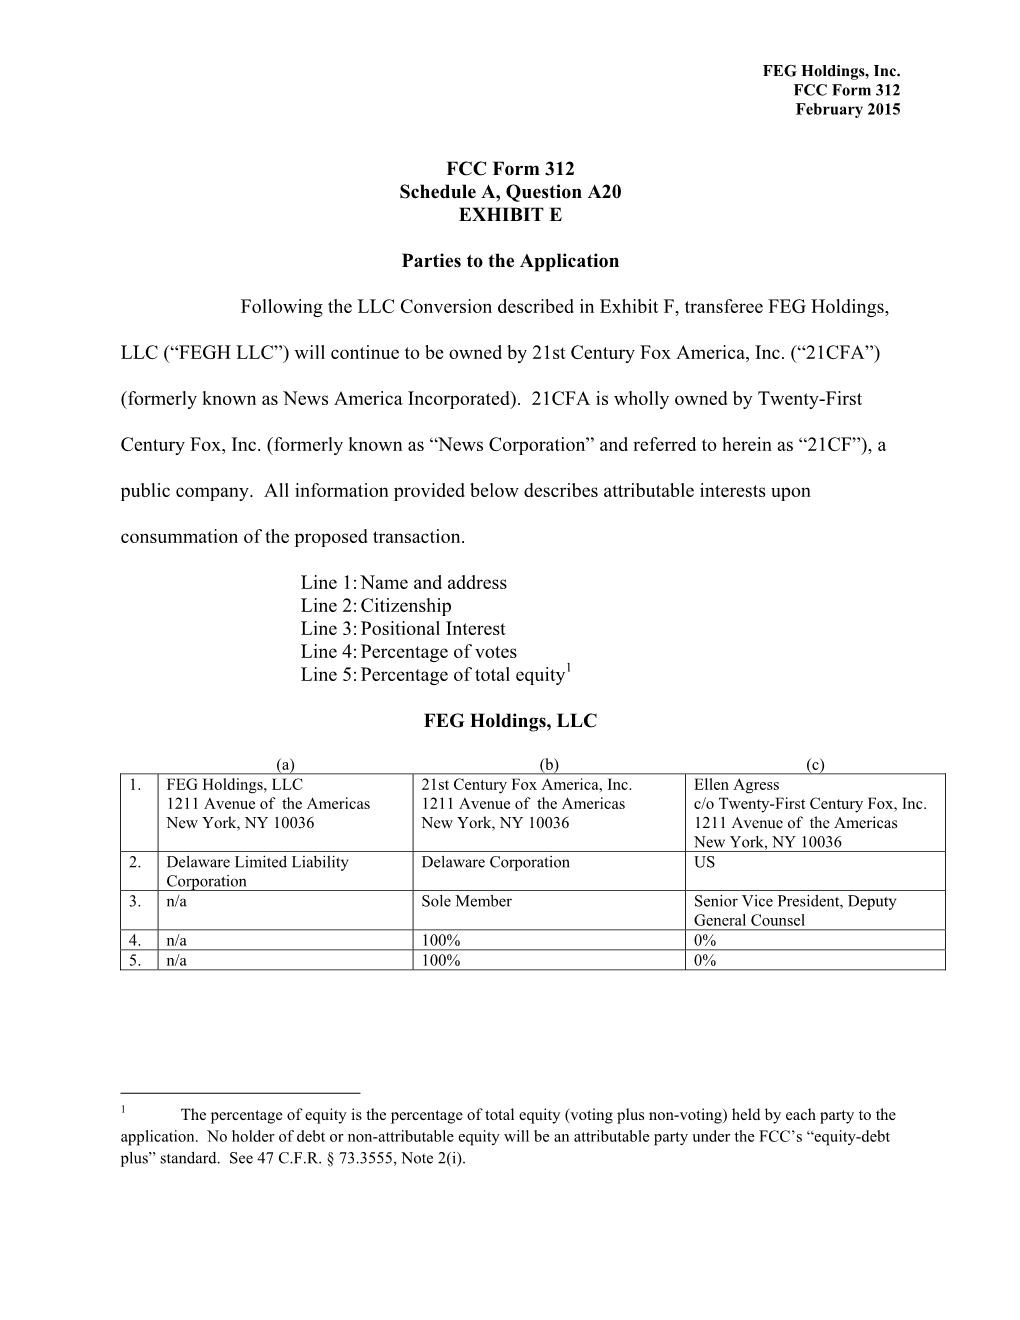 FCC Form 312 Schedule A, Question A20 EXHIBIT E